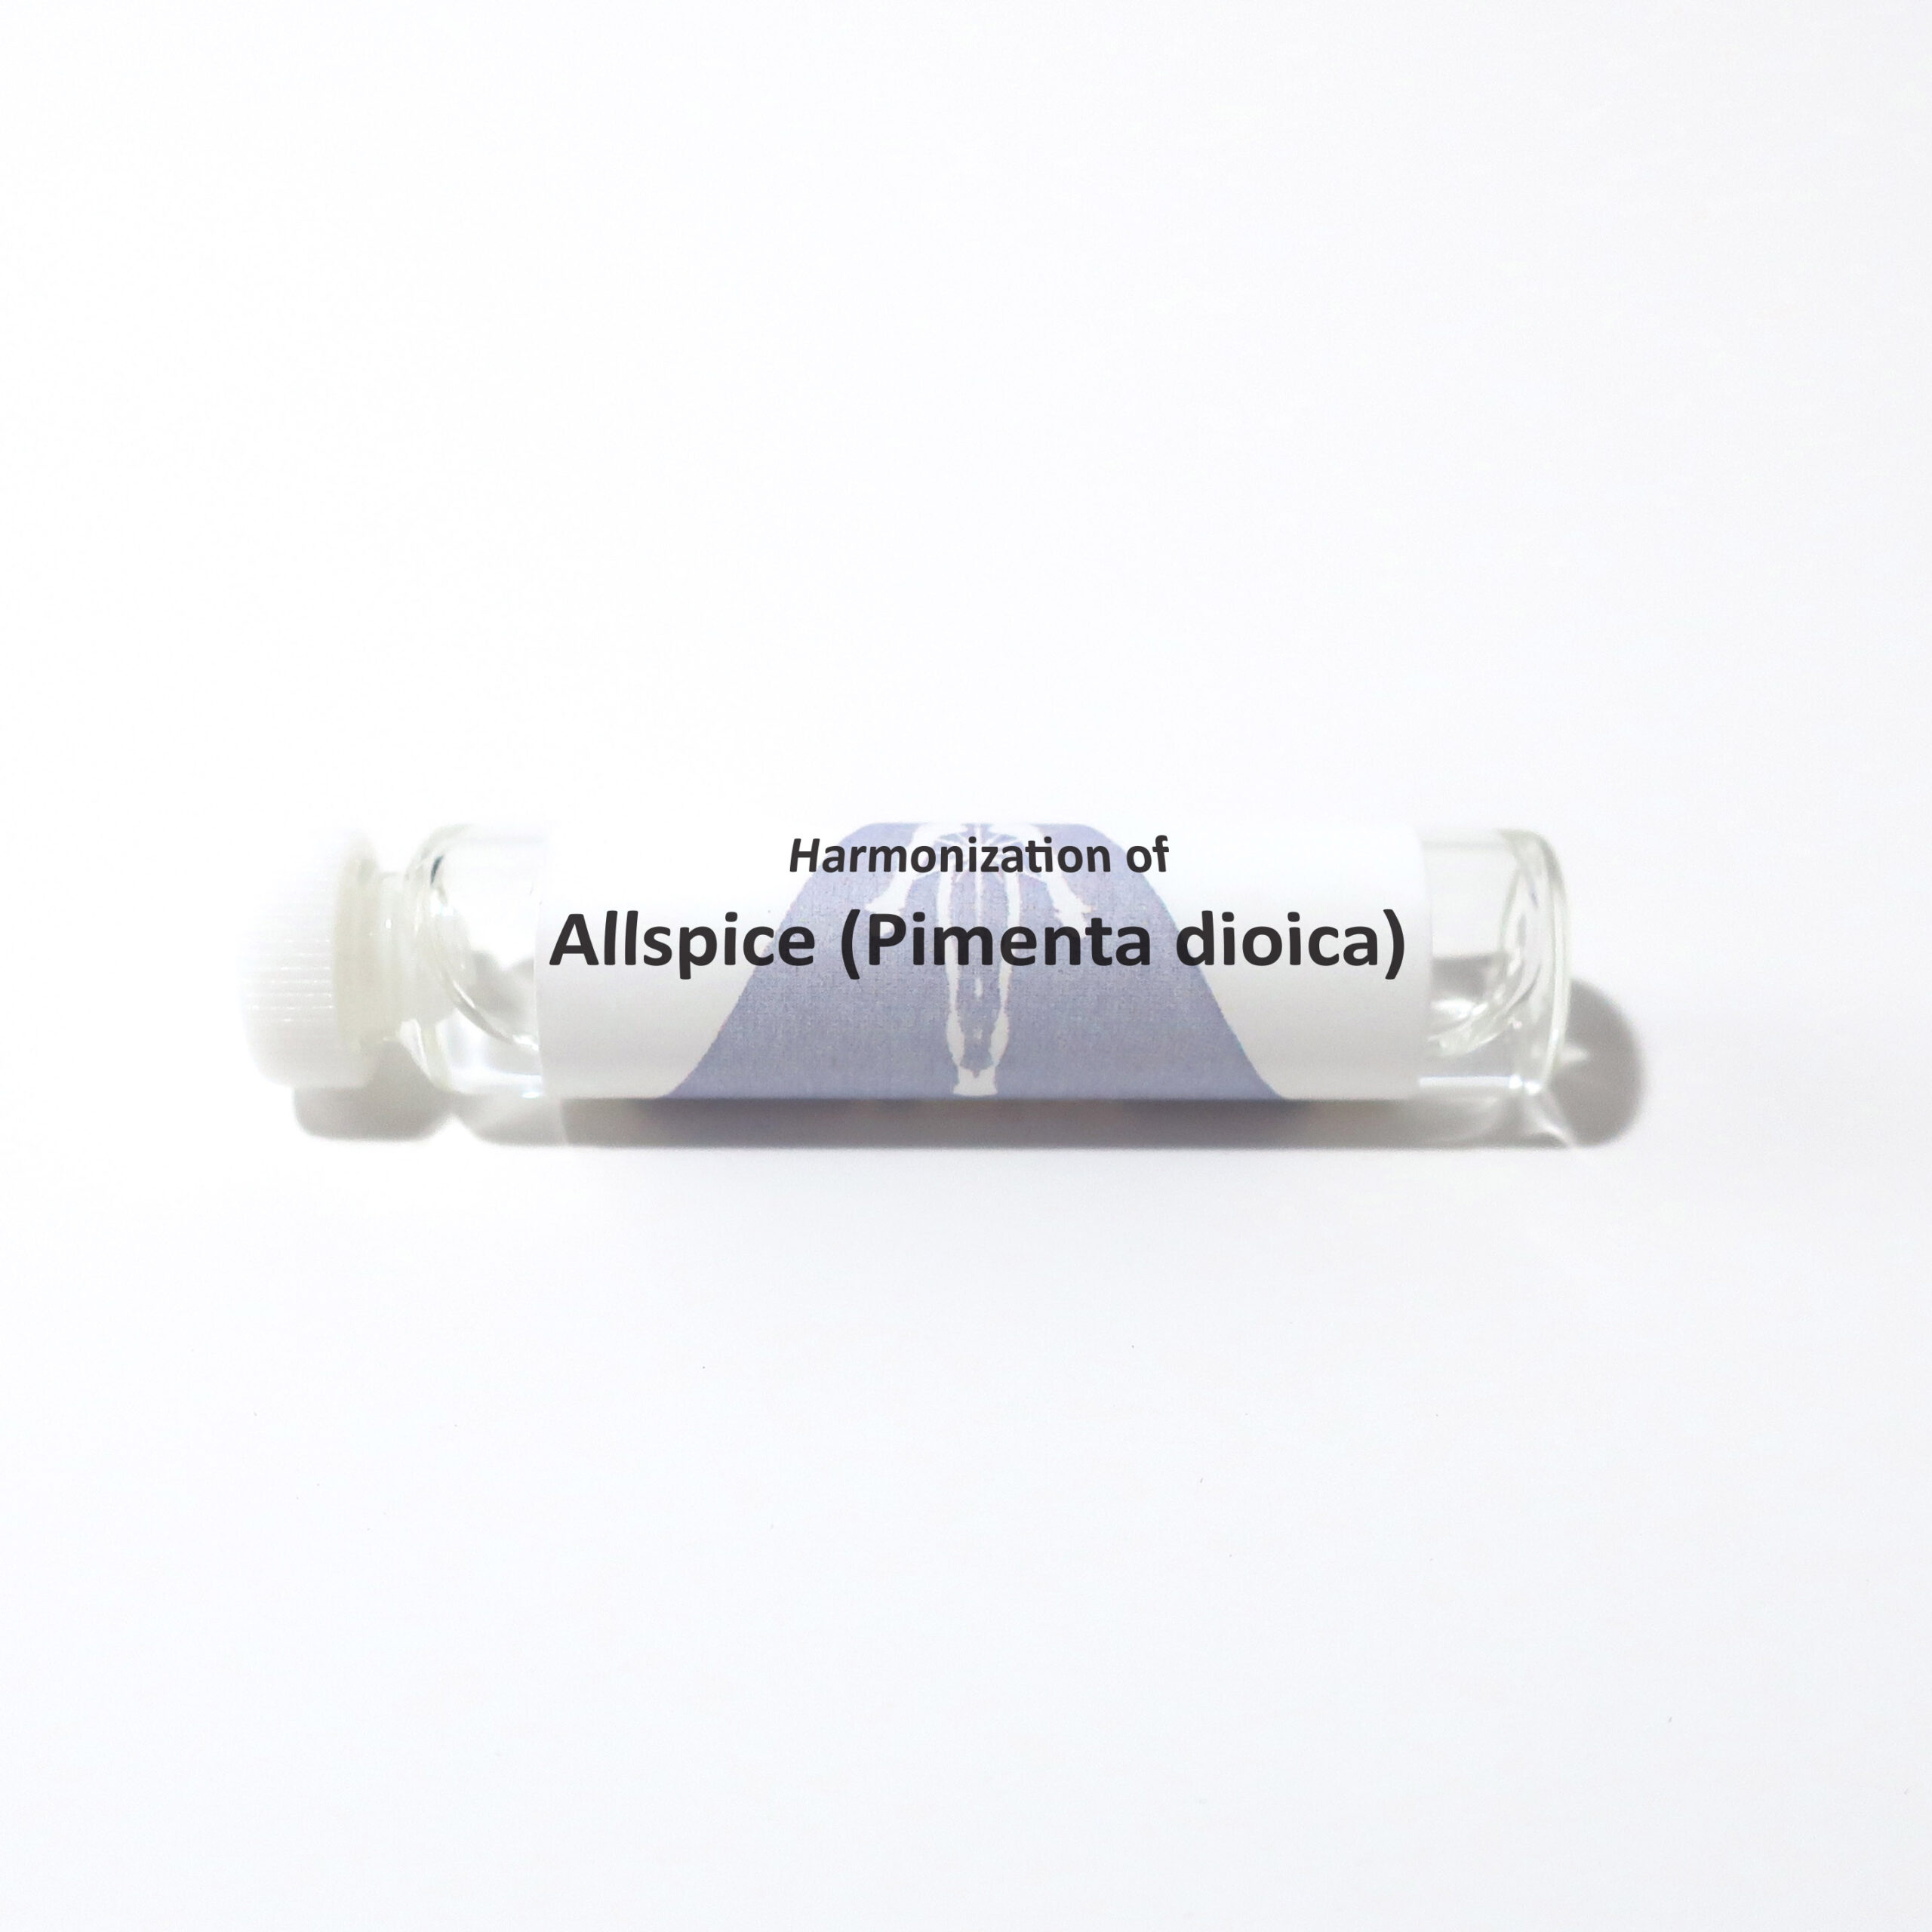 Allspice (Pimenta dioica)